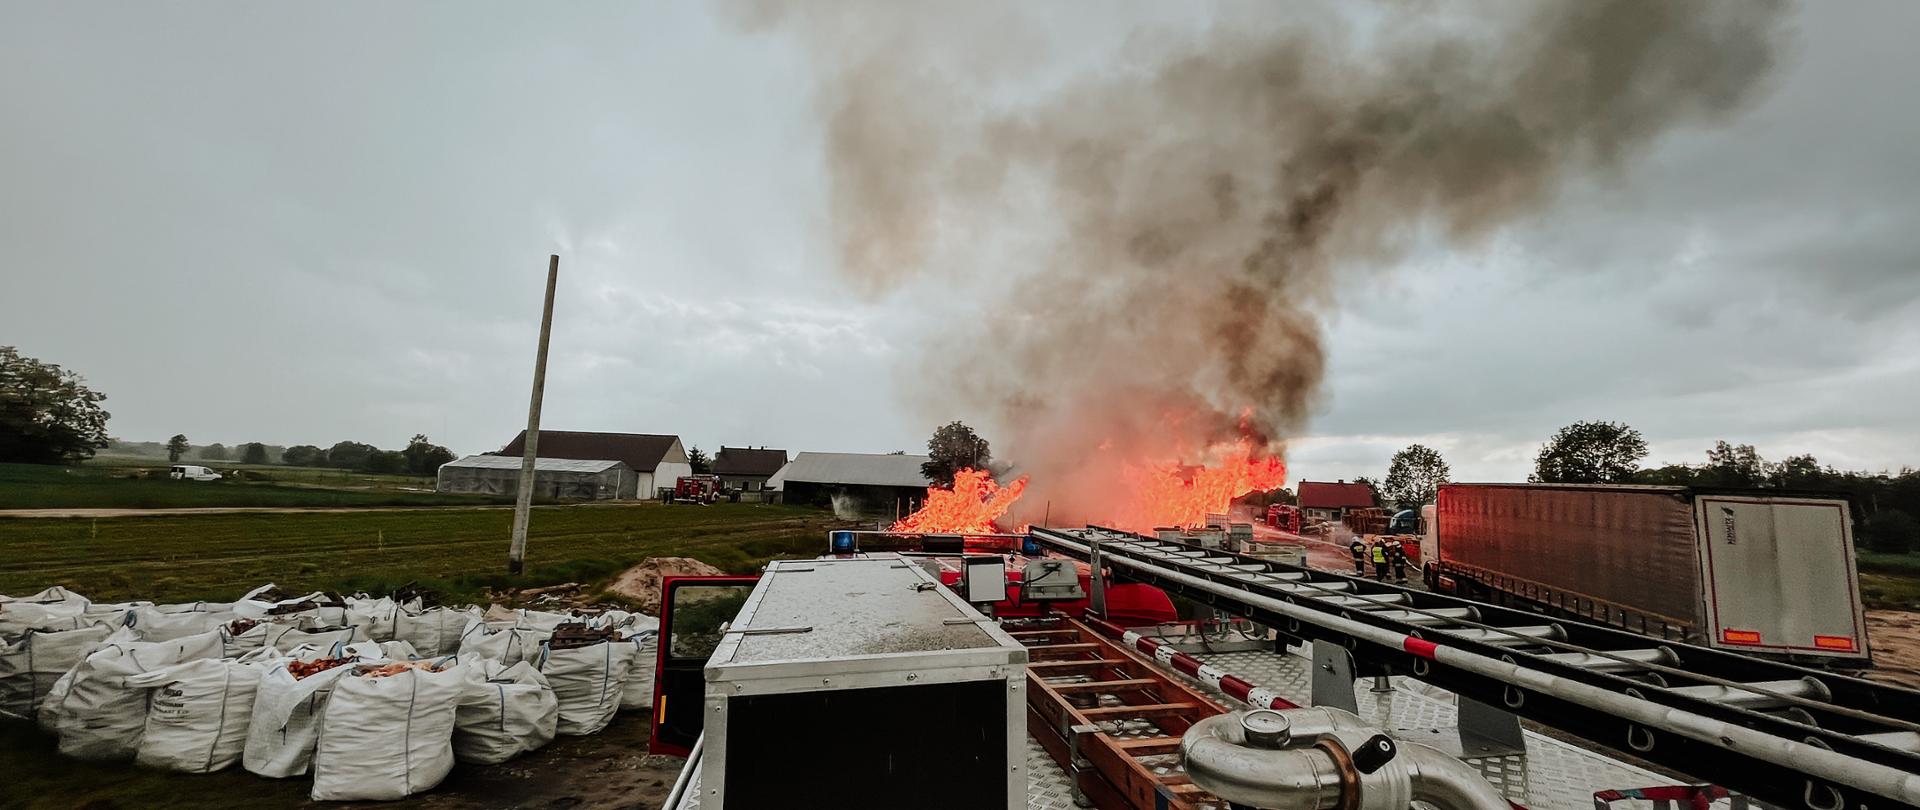 Zdjęcie wykonane z wozu strażackiego pożaru palet. W pobliżu zagrożone samochody i worki z pelletem